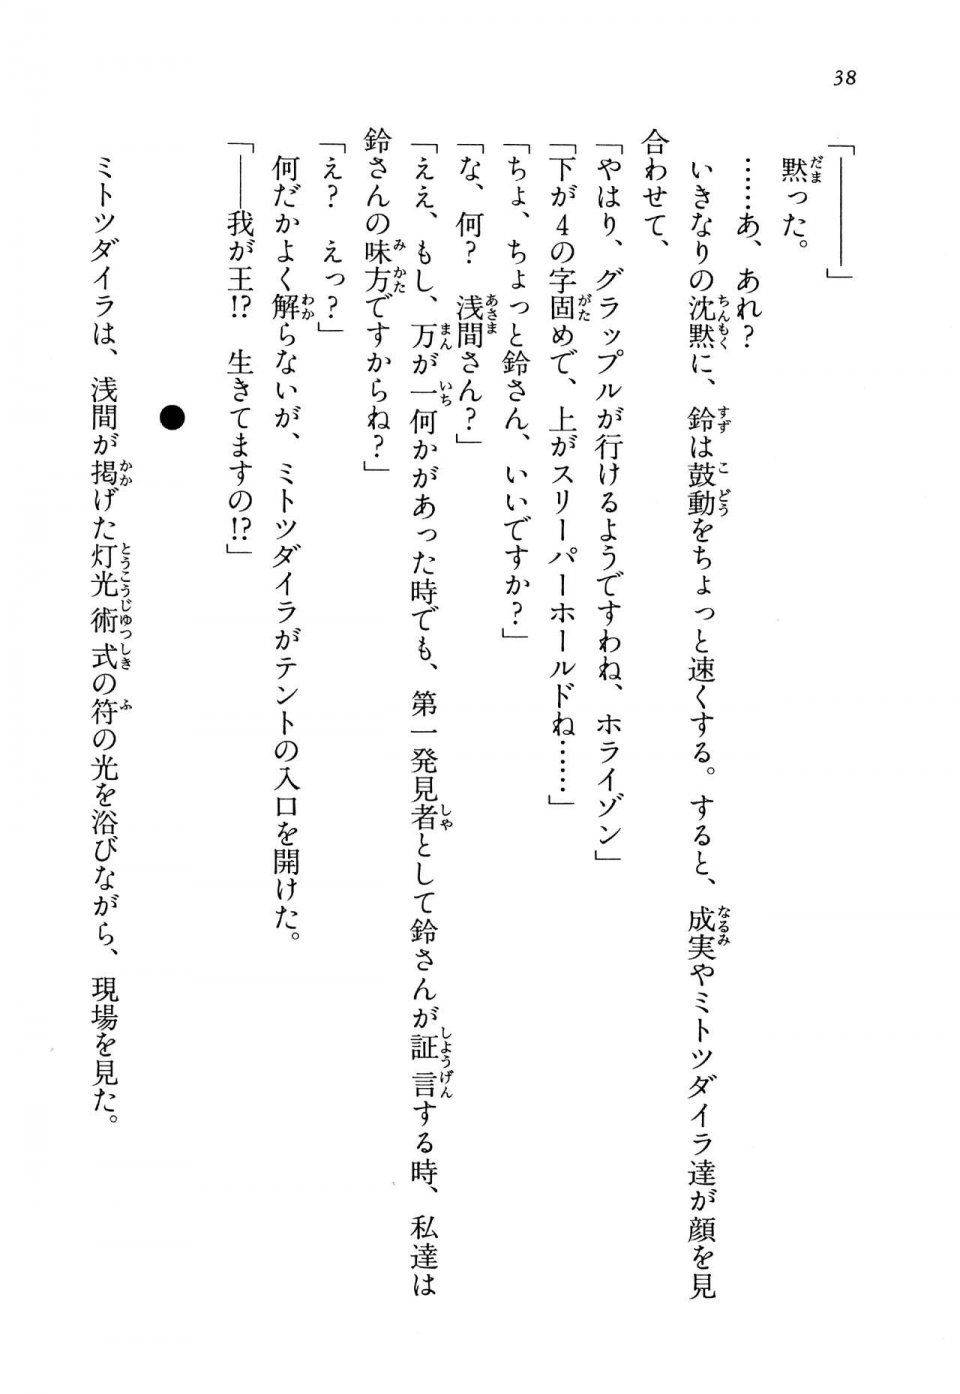 Kyoukai Senjou no Horizon LN Vol 13(6A) - Photo #38